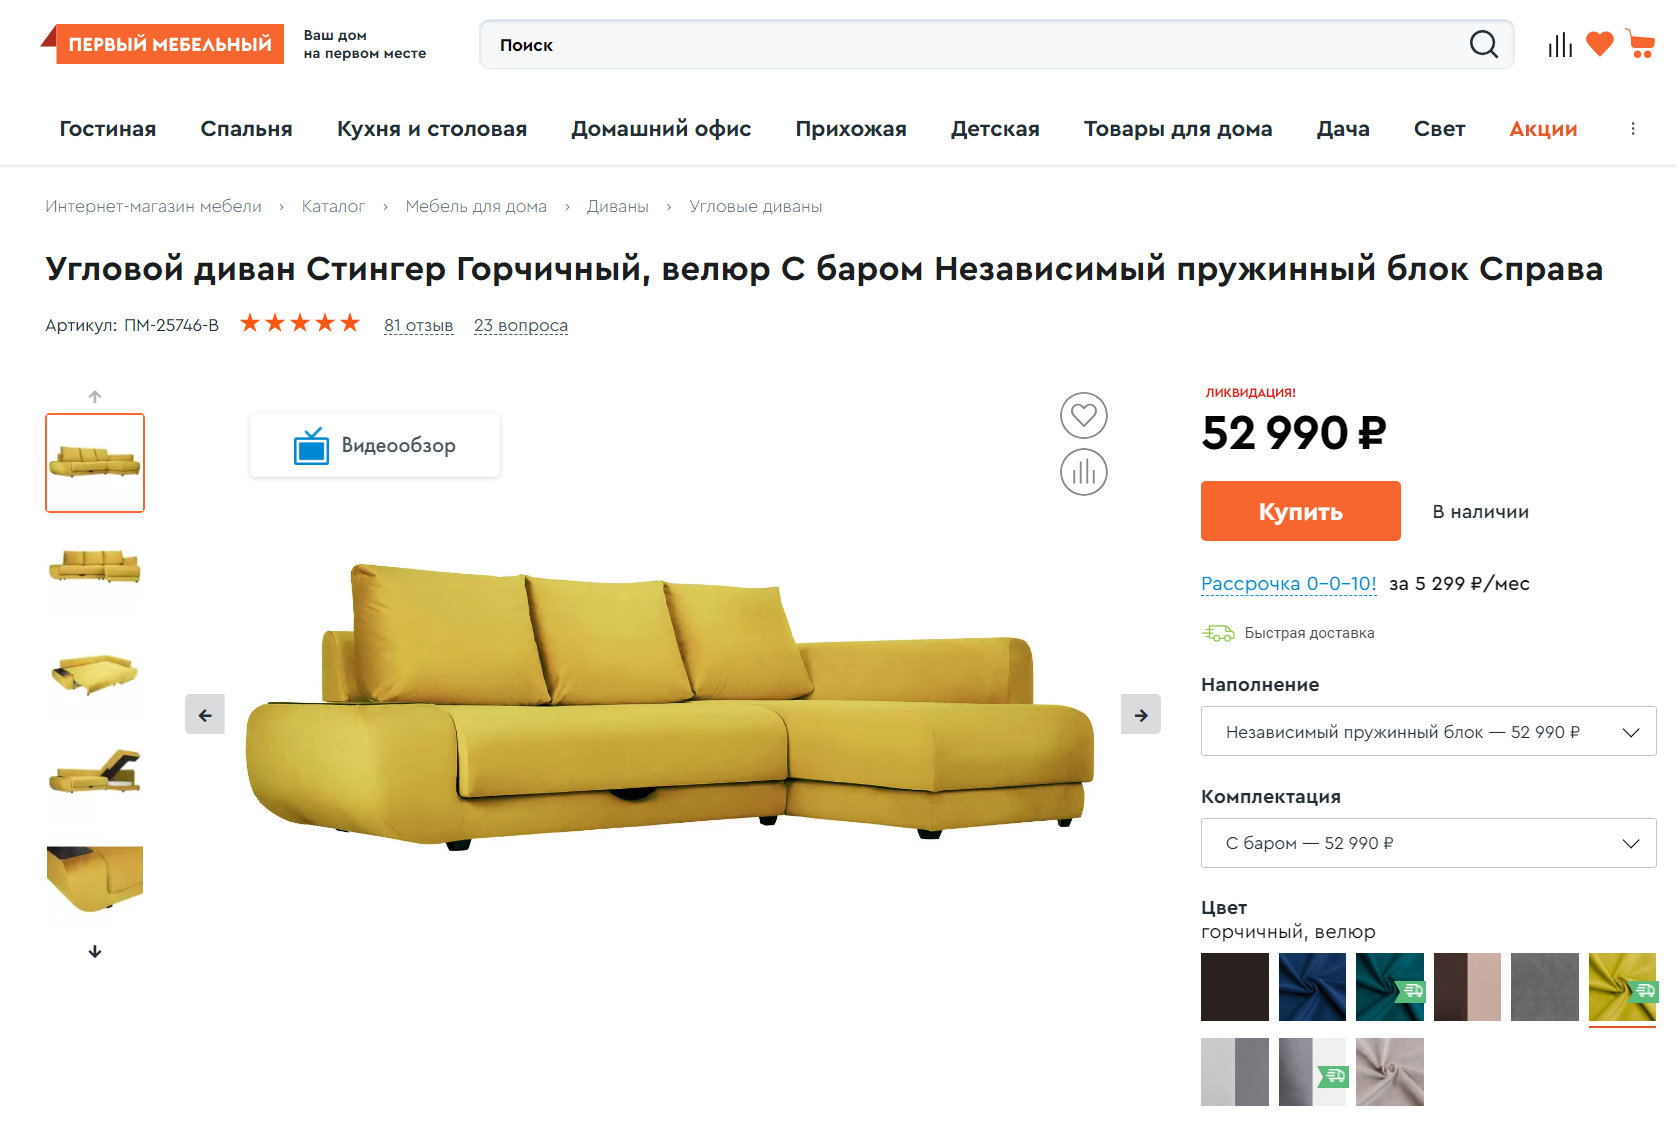 Как продавать мебель через интернет-магазин